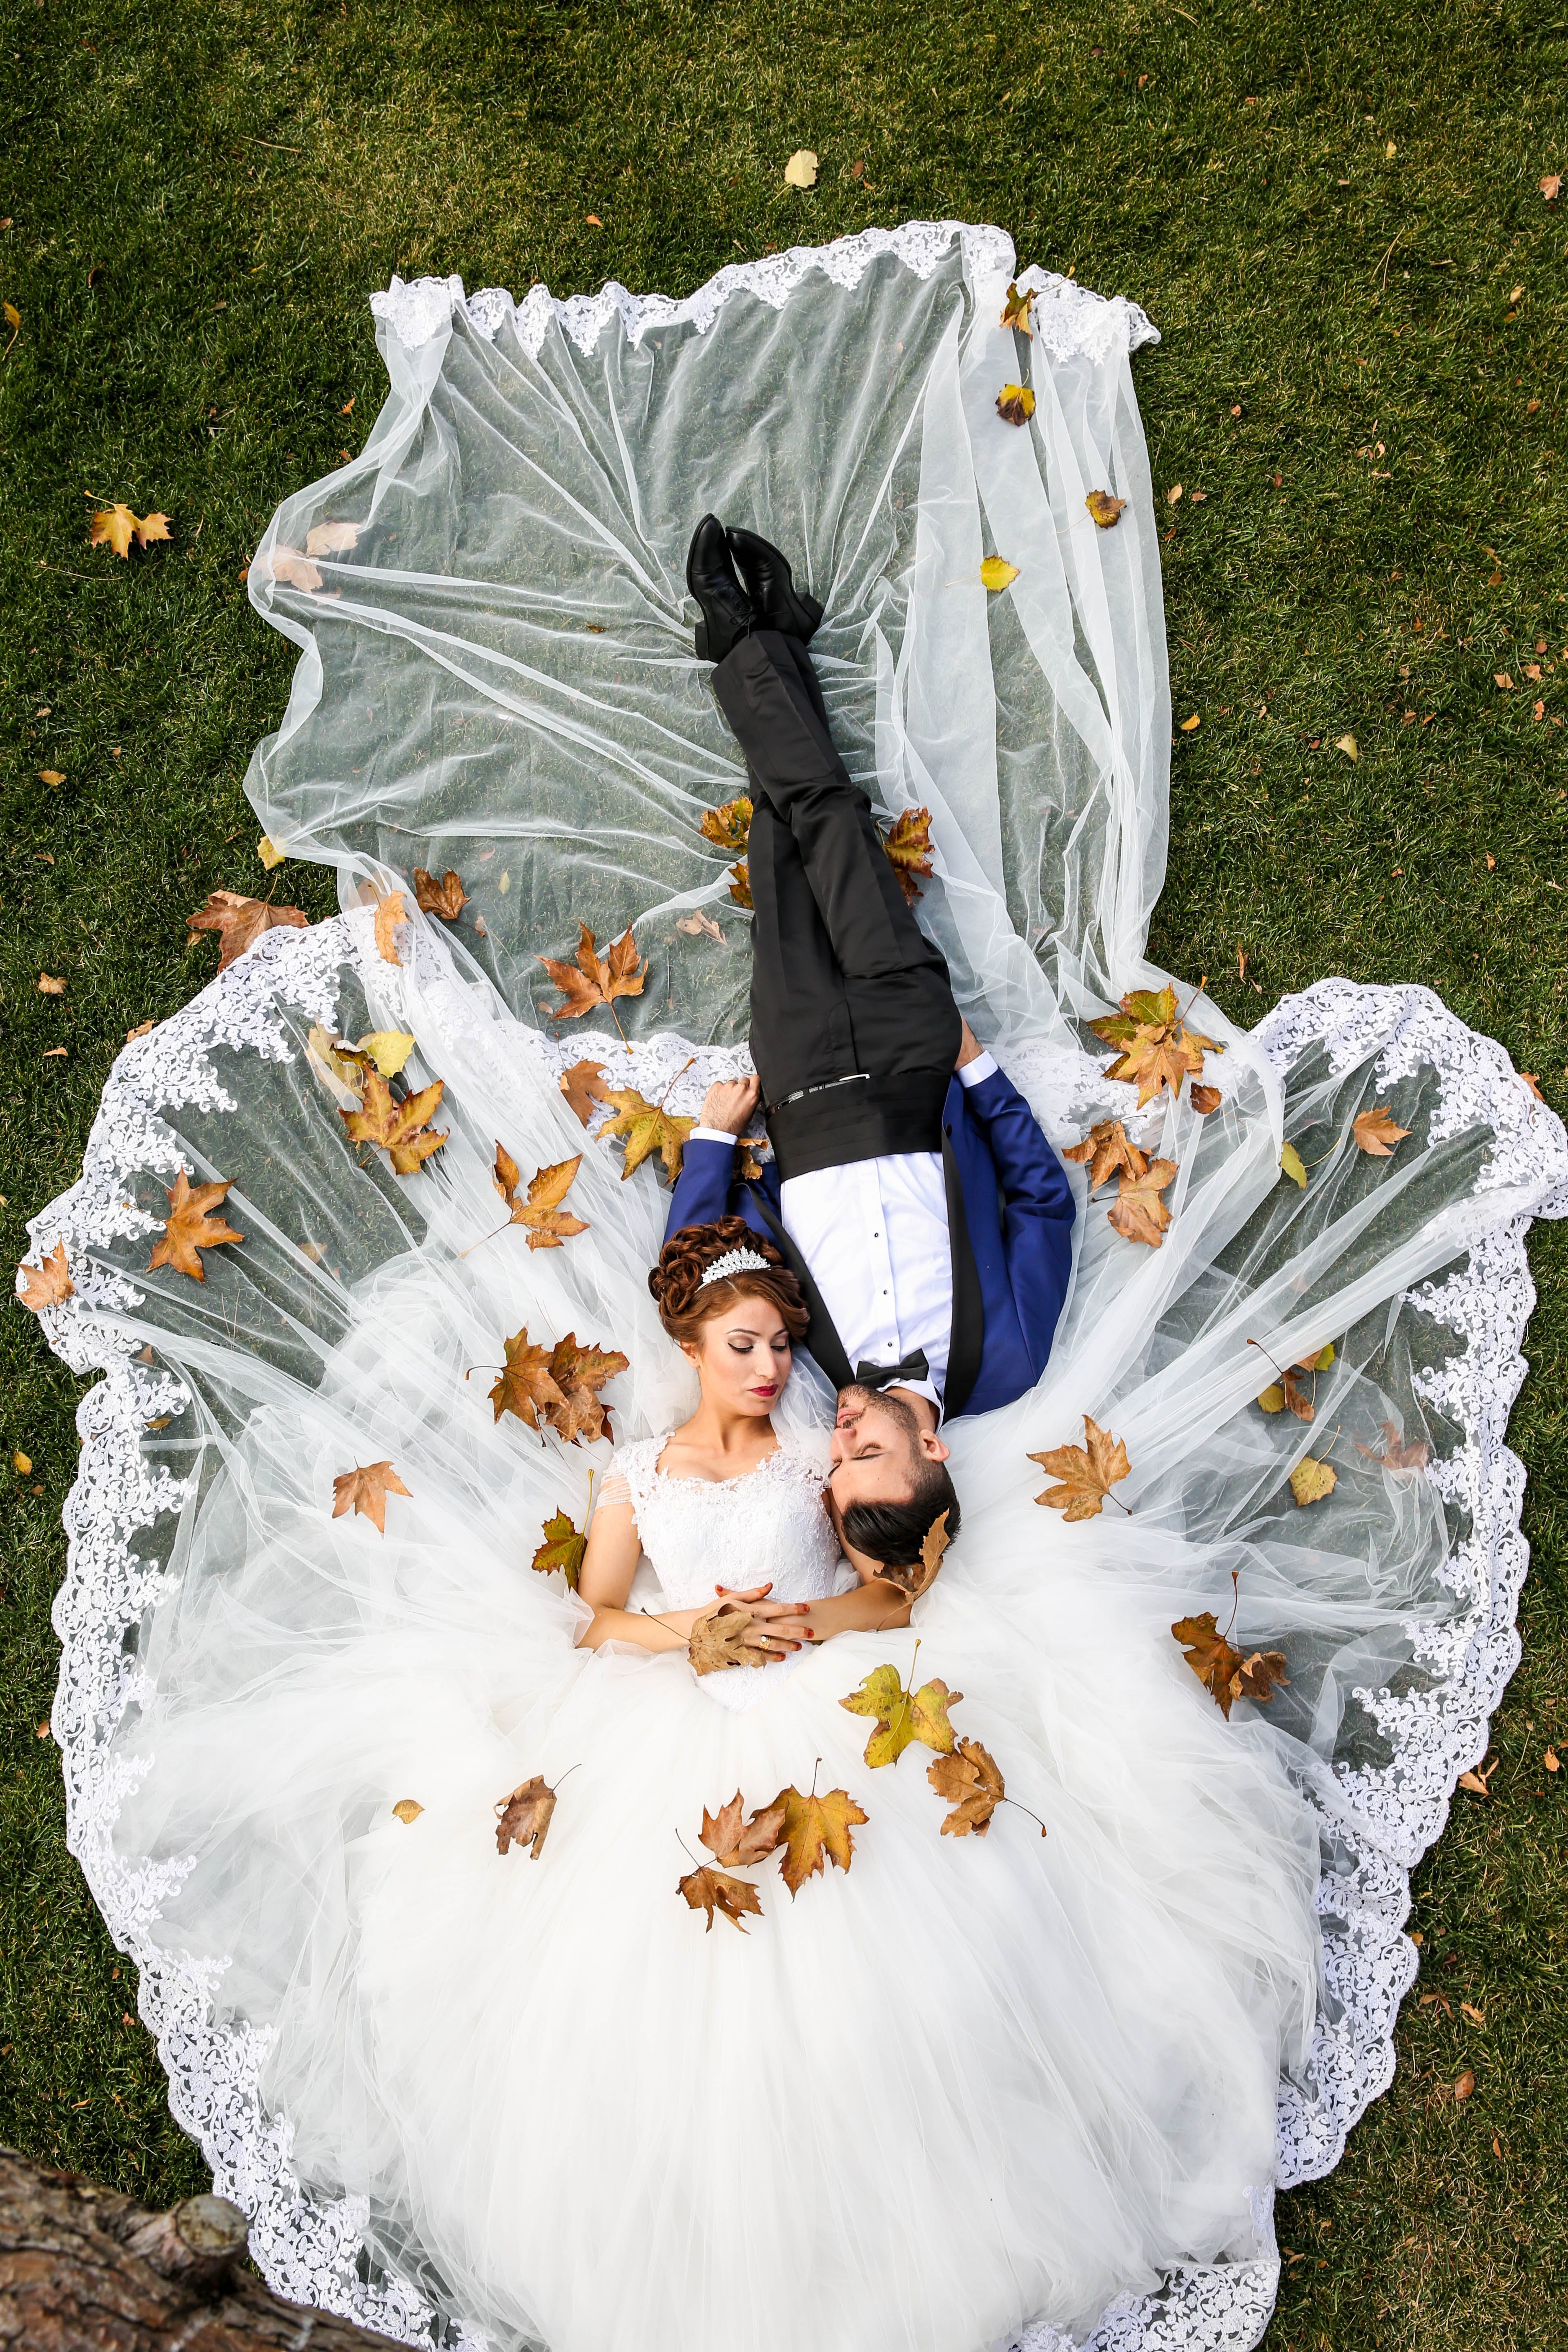 Ein frisch vermähltes Paar, das in seiner Hochzeitskleidung auf dem Rasen liegt | Quelle: Pexels